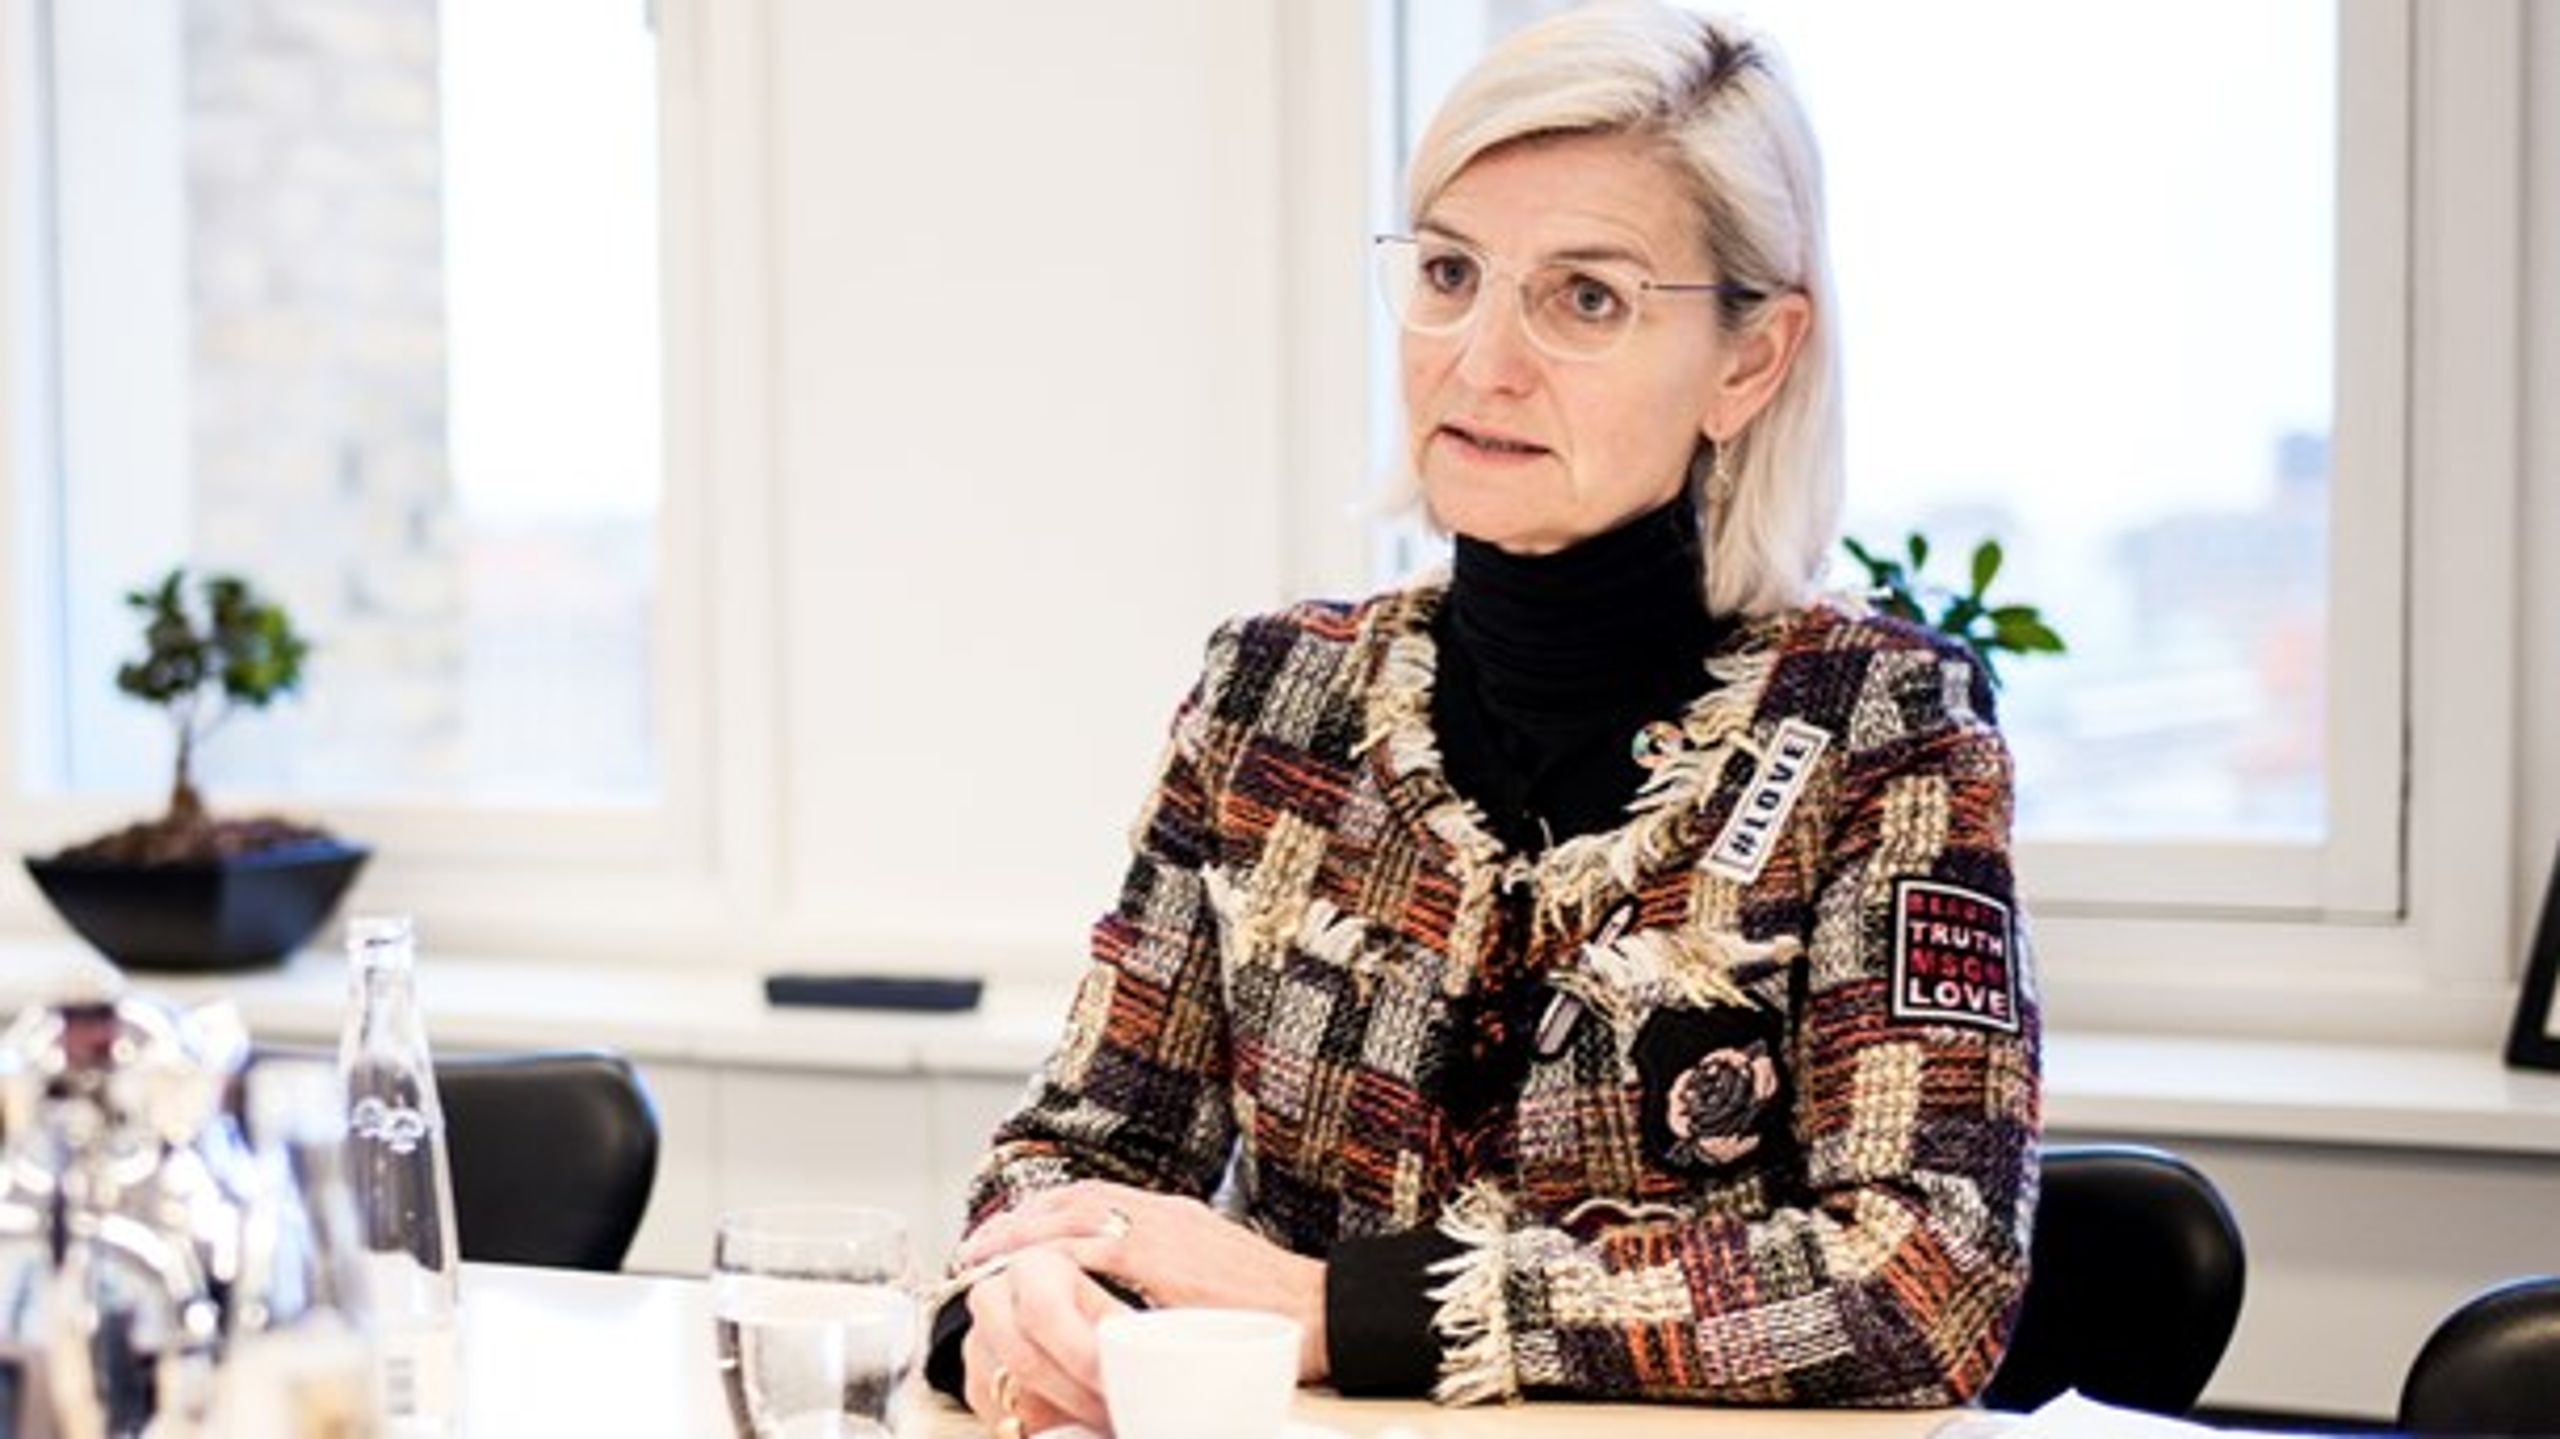 Udviklingsminister Ulla Tørnæs (V) har færre og færre midler at gøre godt med i udviklingslandene.&nbsp;